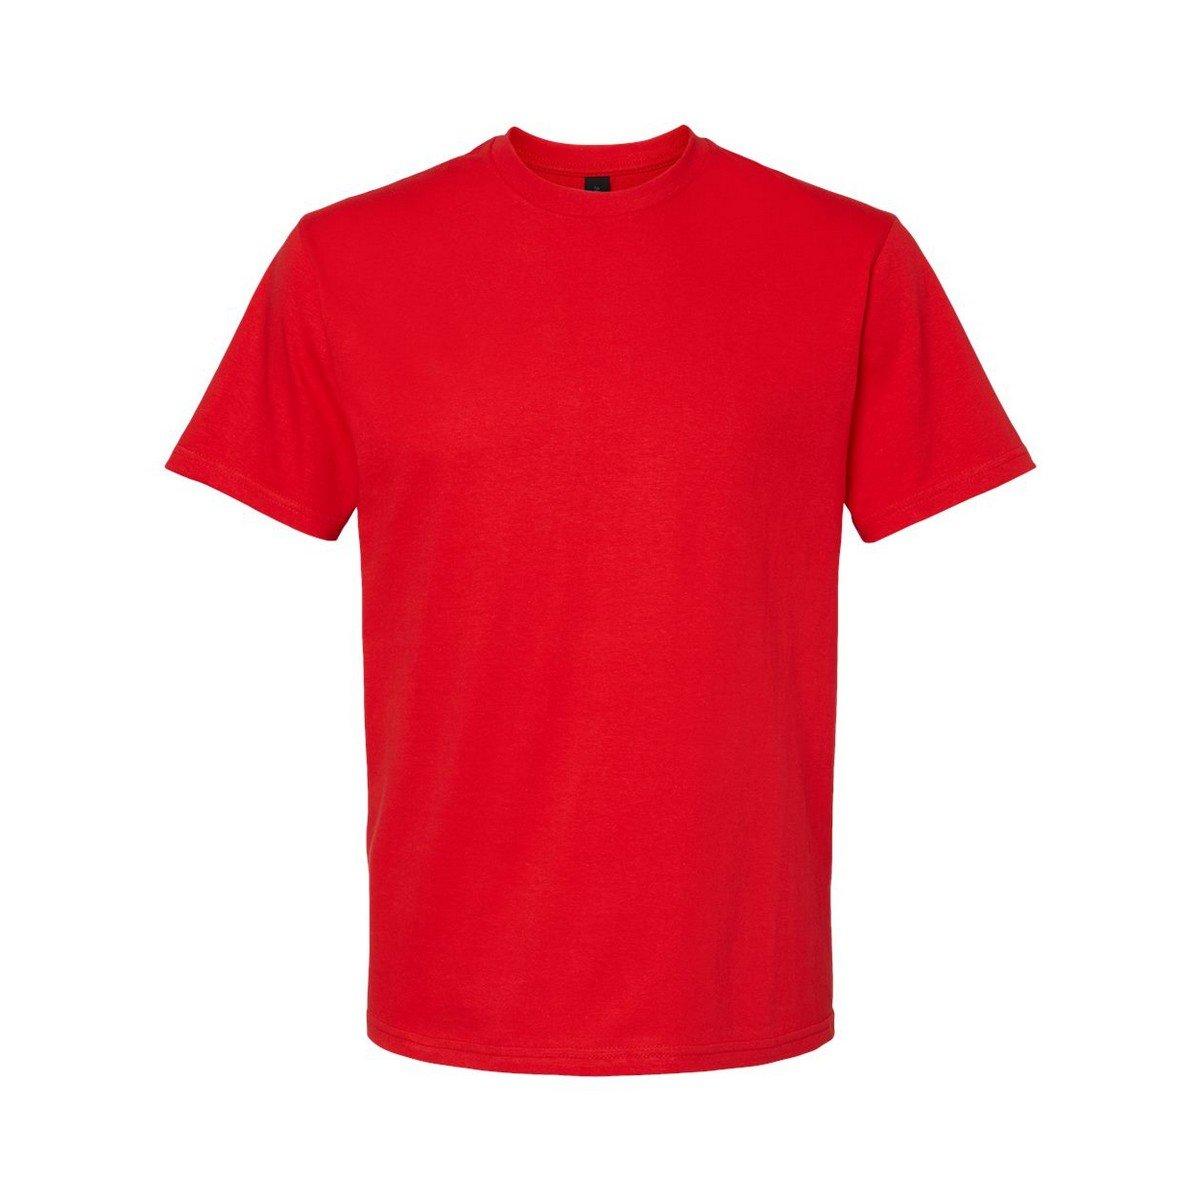 Softstyle Tshirt Mittelschwer Herren Rot Bunt M von Gildan